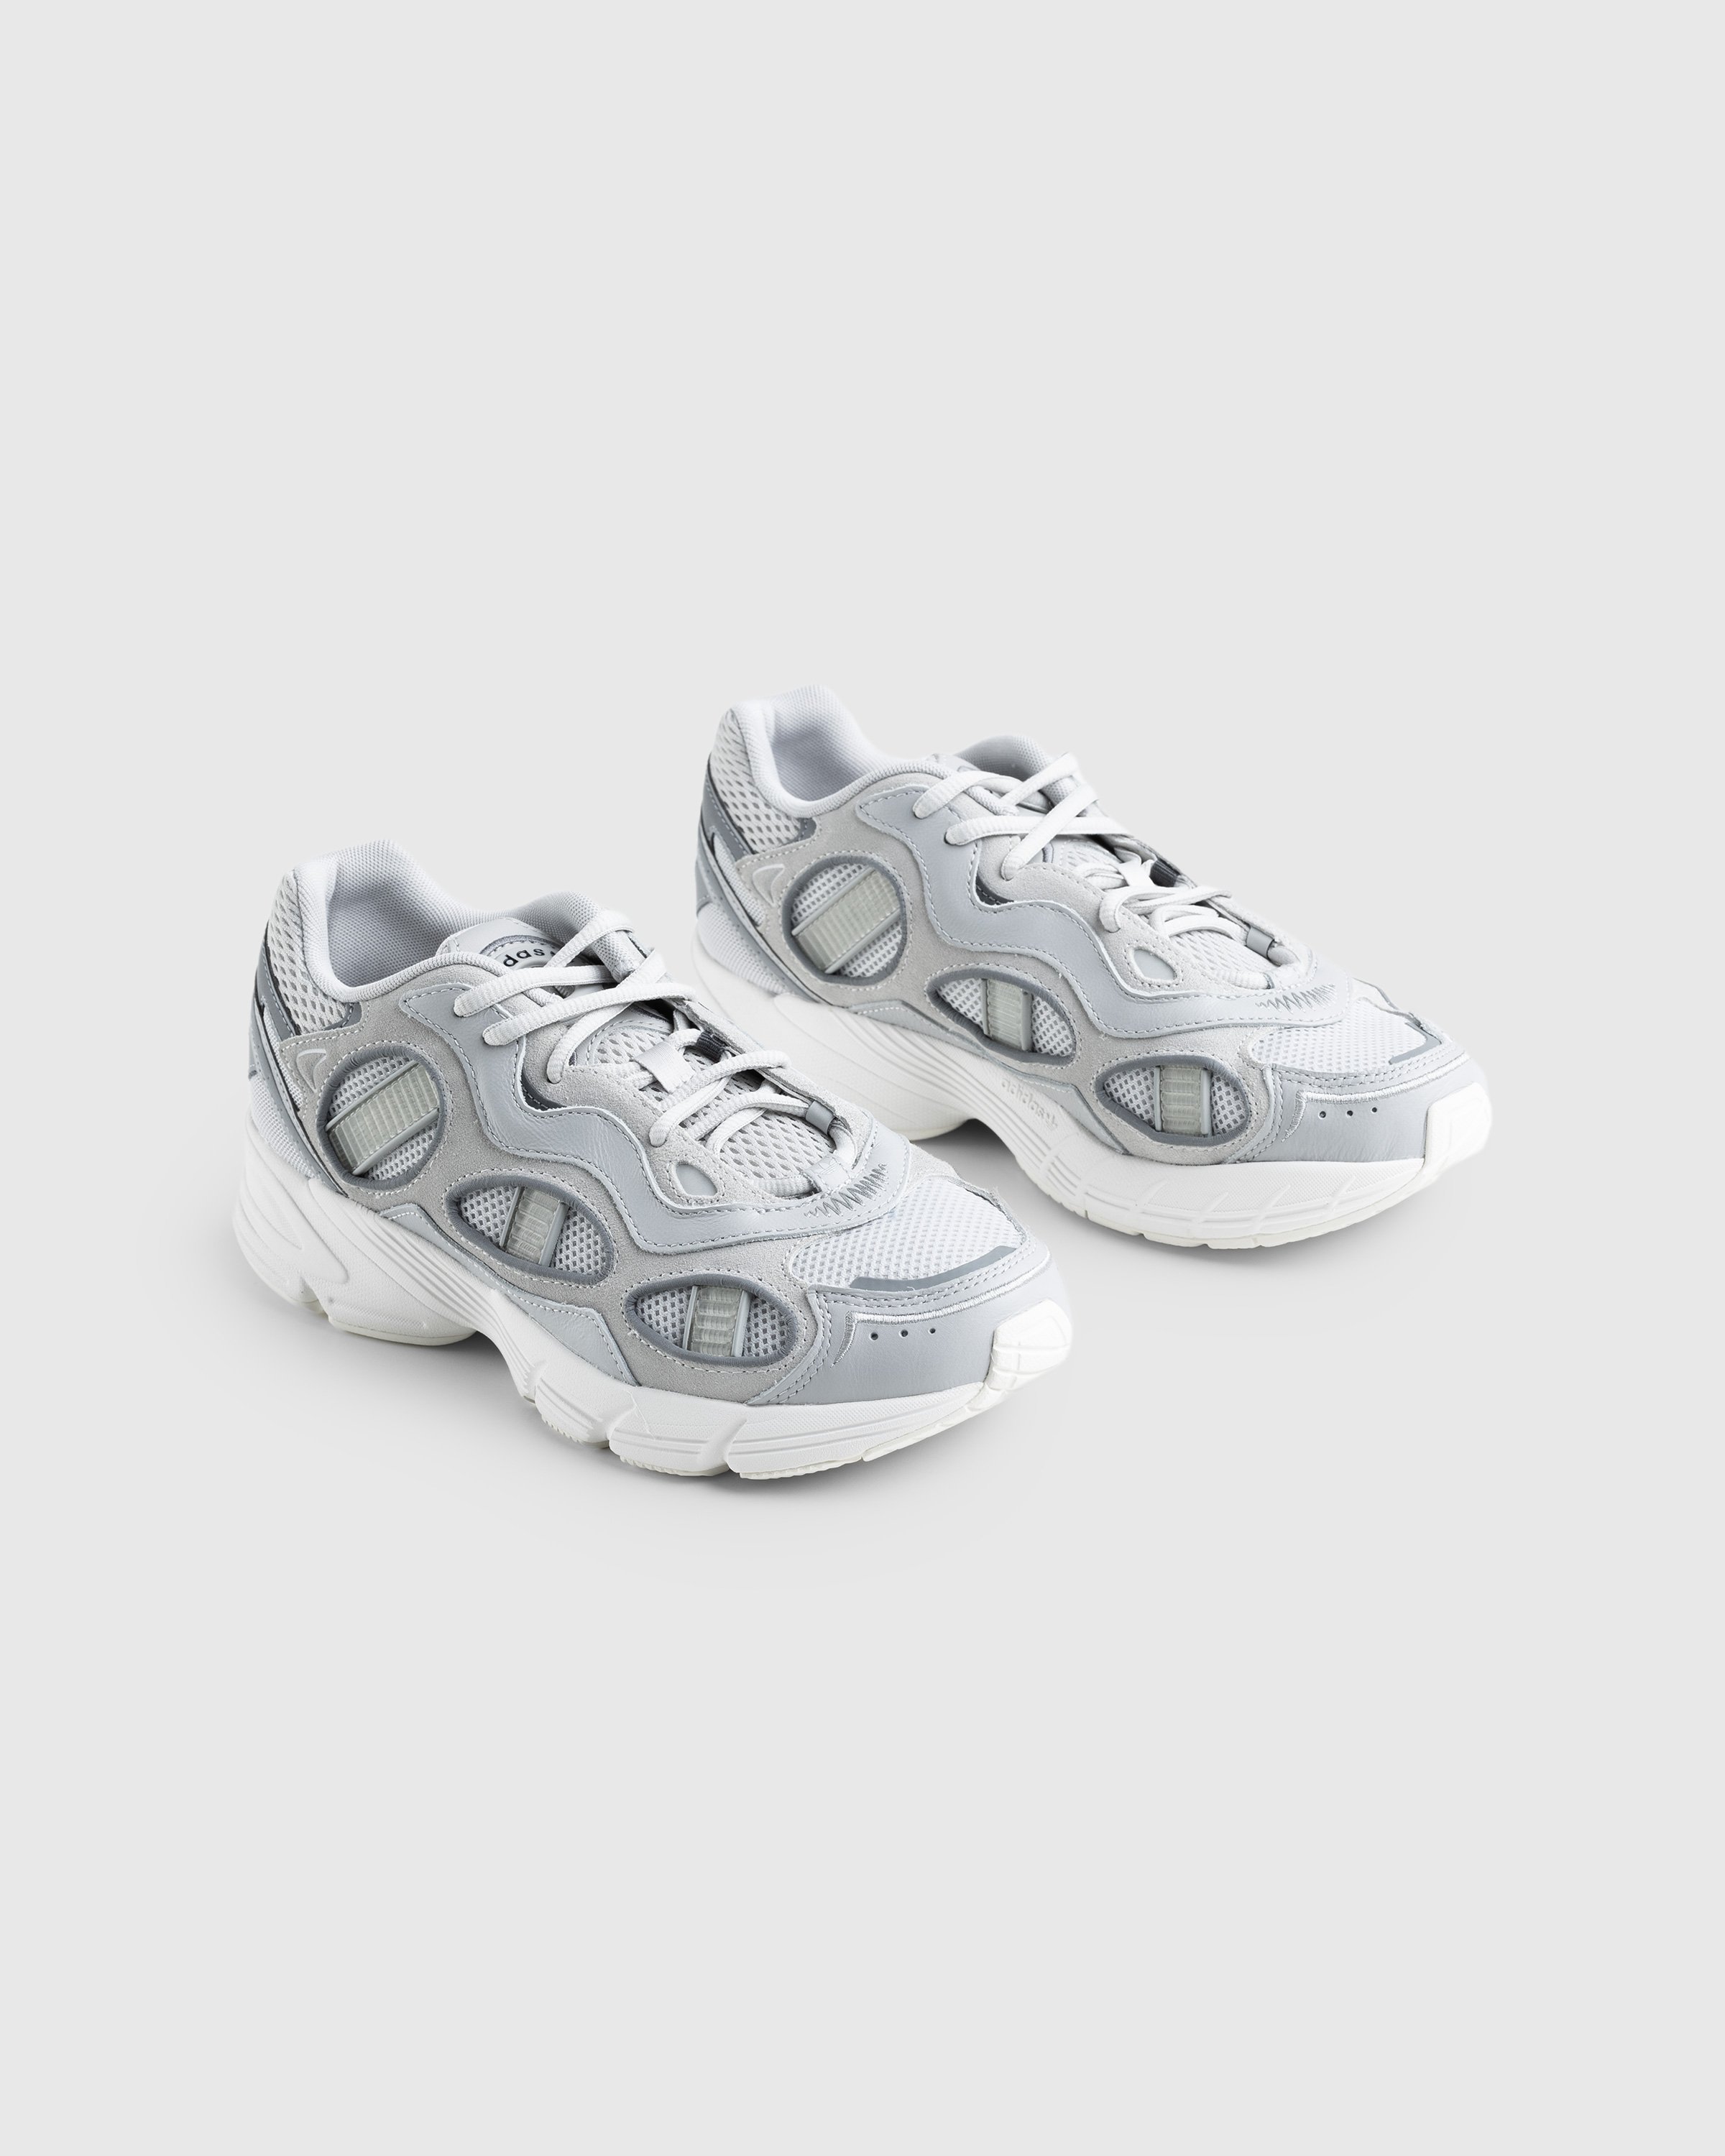 Adidas - Astir Sn Grey - Footwear - Grey - Image 3